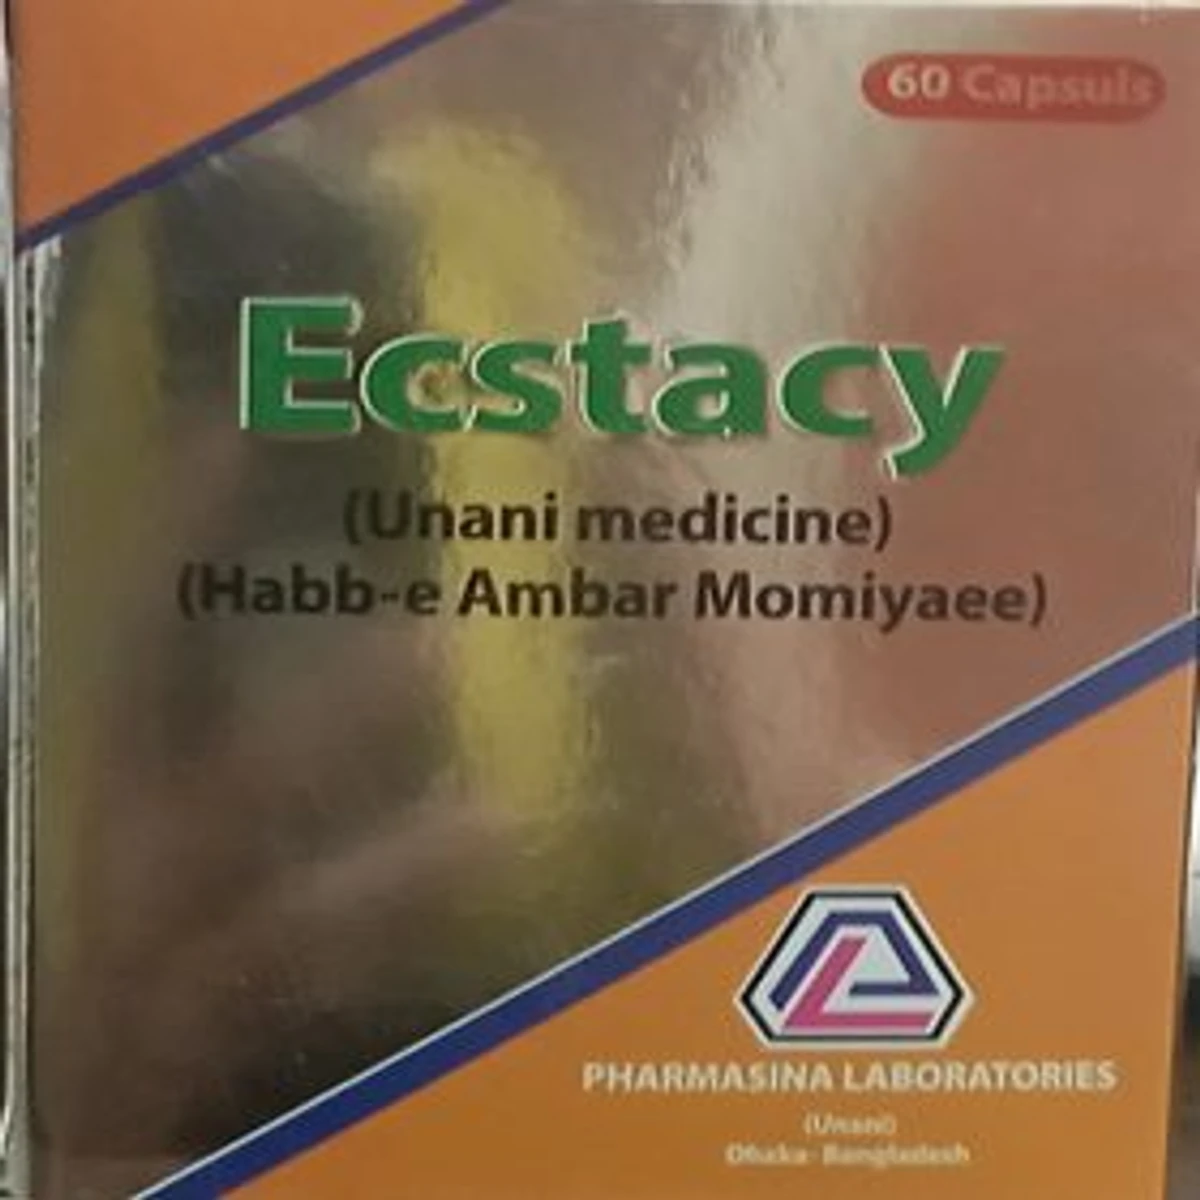 Ecsatcy product of pharmasina company